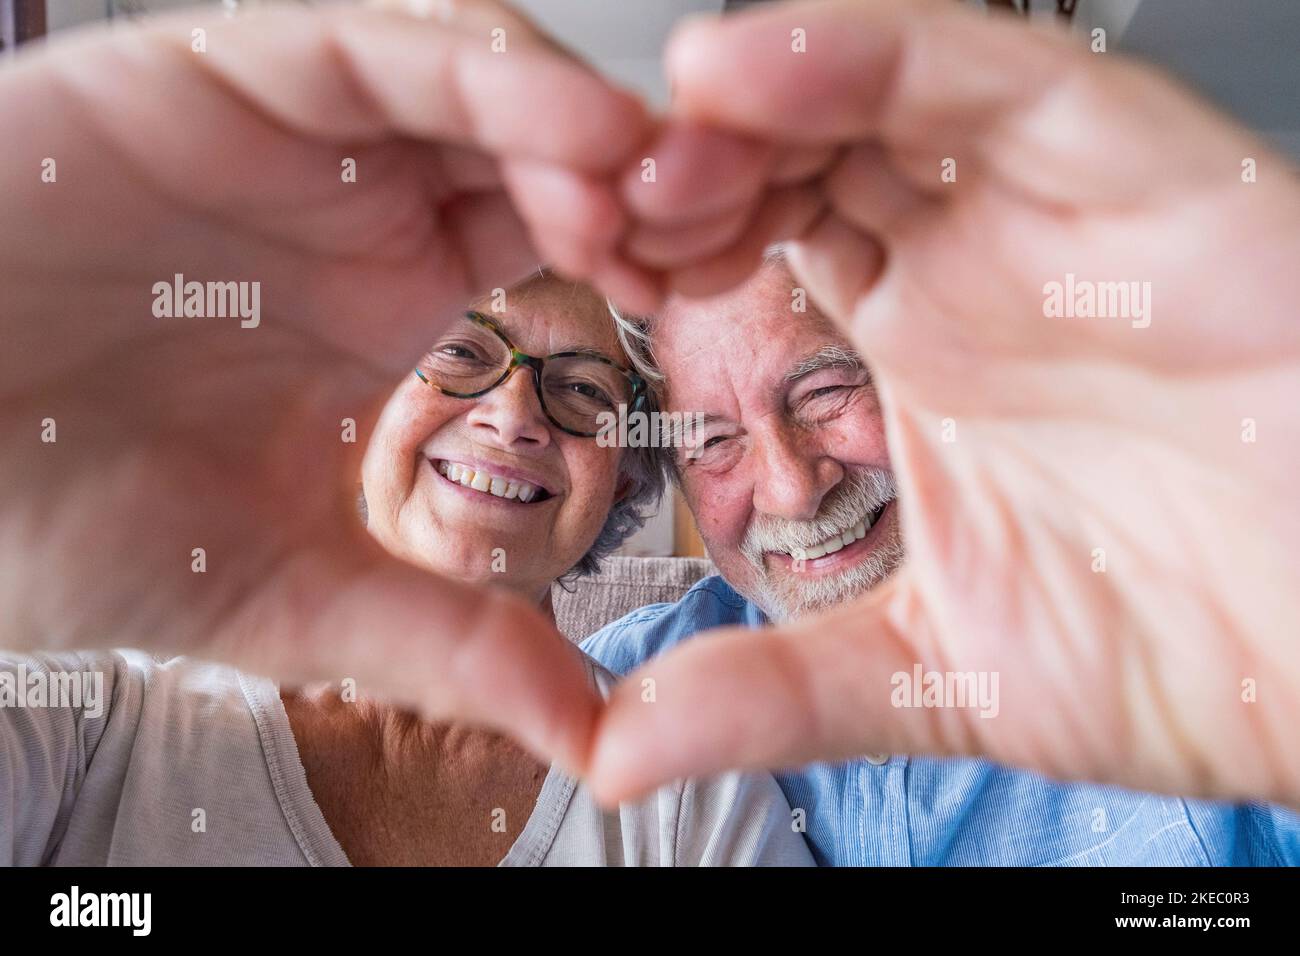 Nahaufnahme Porträt glücklich aufrichtig im mittleren Alter ältere Rentnerfamilie Paar macht Herzgeste mit den Fingern, zeigt Liebe oder zeigt aufrichtige Gefühle zusammen drinnen, Blick auf die Kamera. Stockfoto